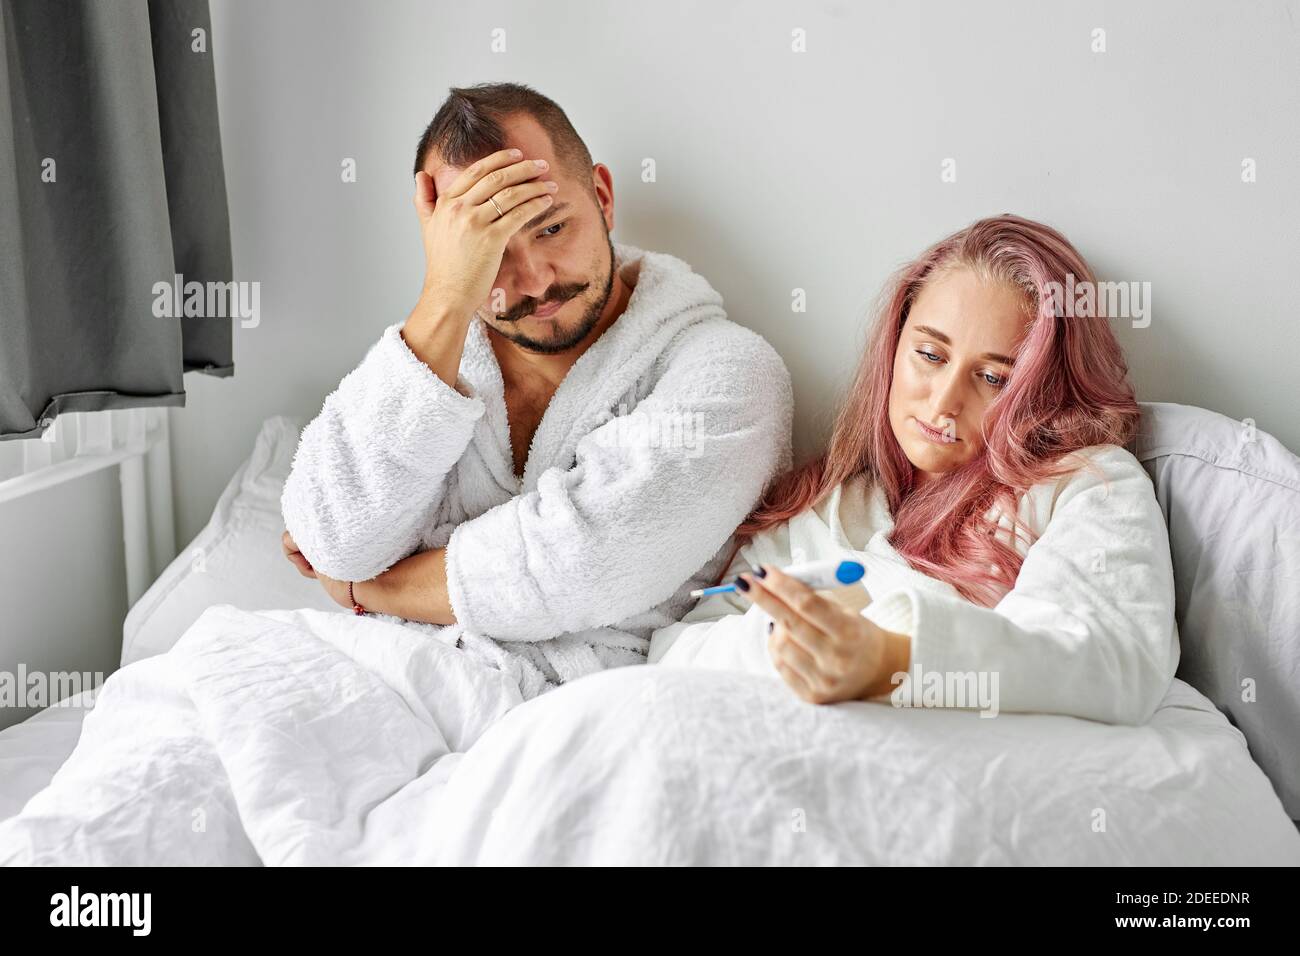 Unglückliches Paar fand heraus über Schwangerschaft, liegen auf dem Bett am Morgen, Blick auf Test, unzufrieden mit ungeplanten, unerwünschten Schwangerschaft Stockfoto